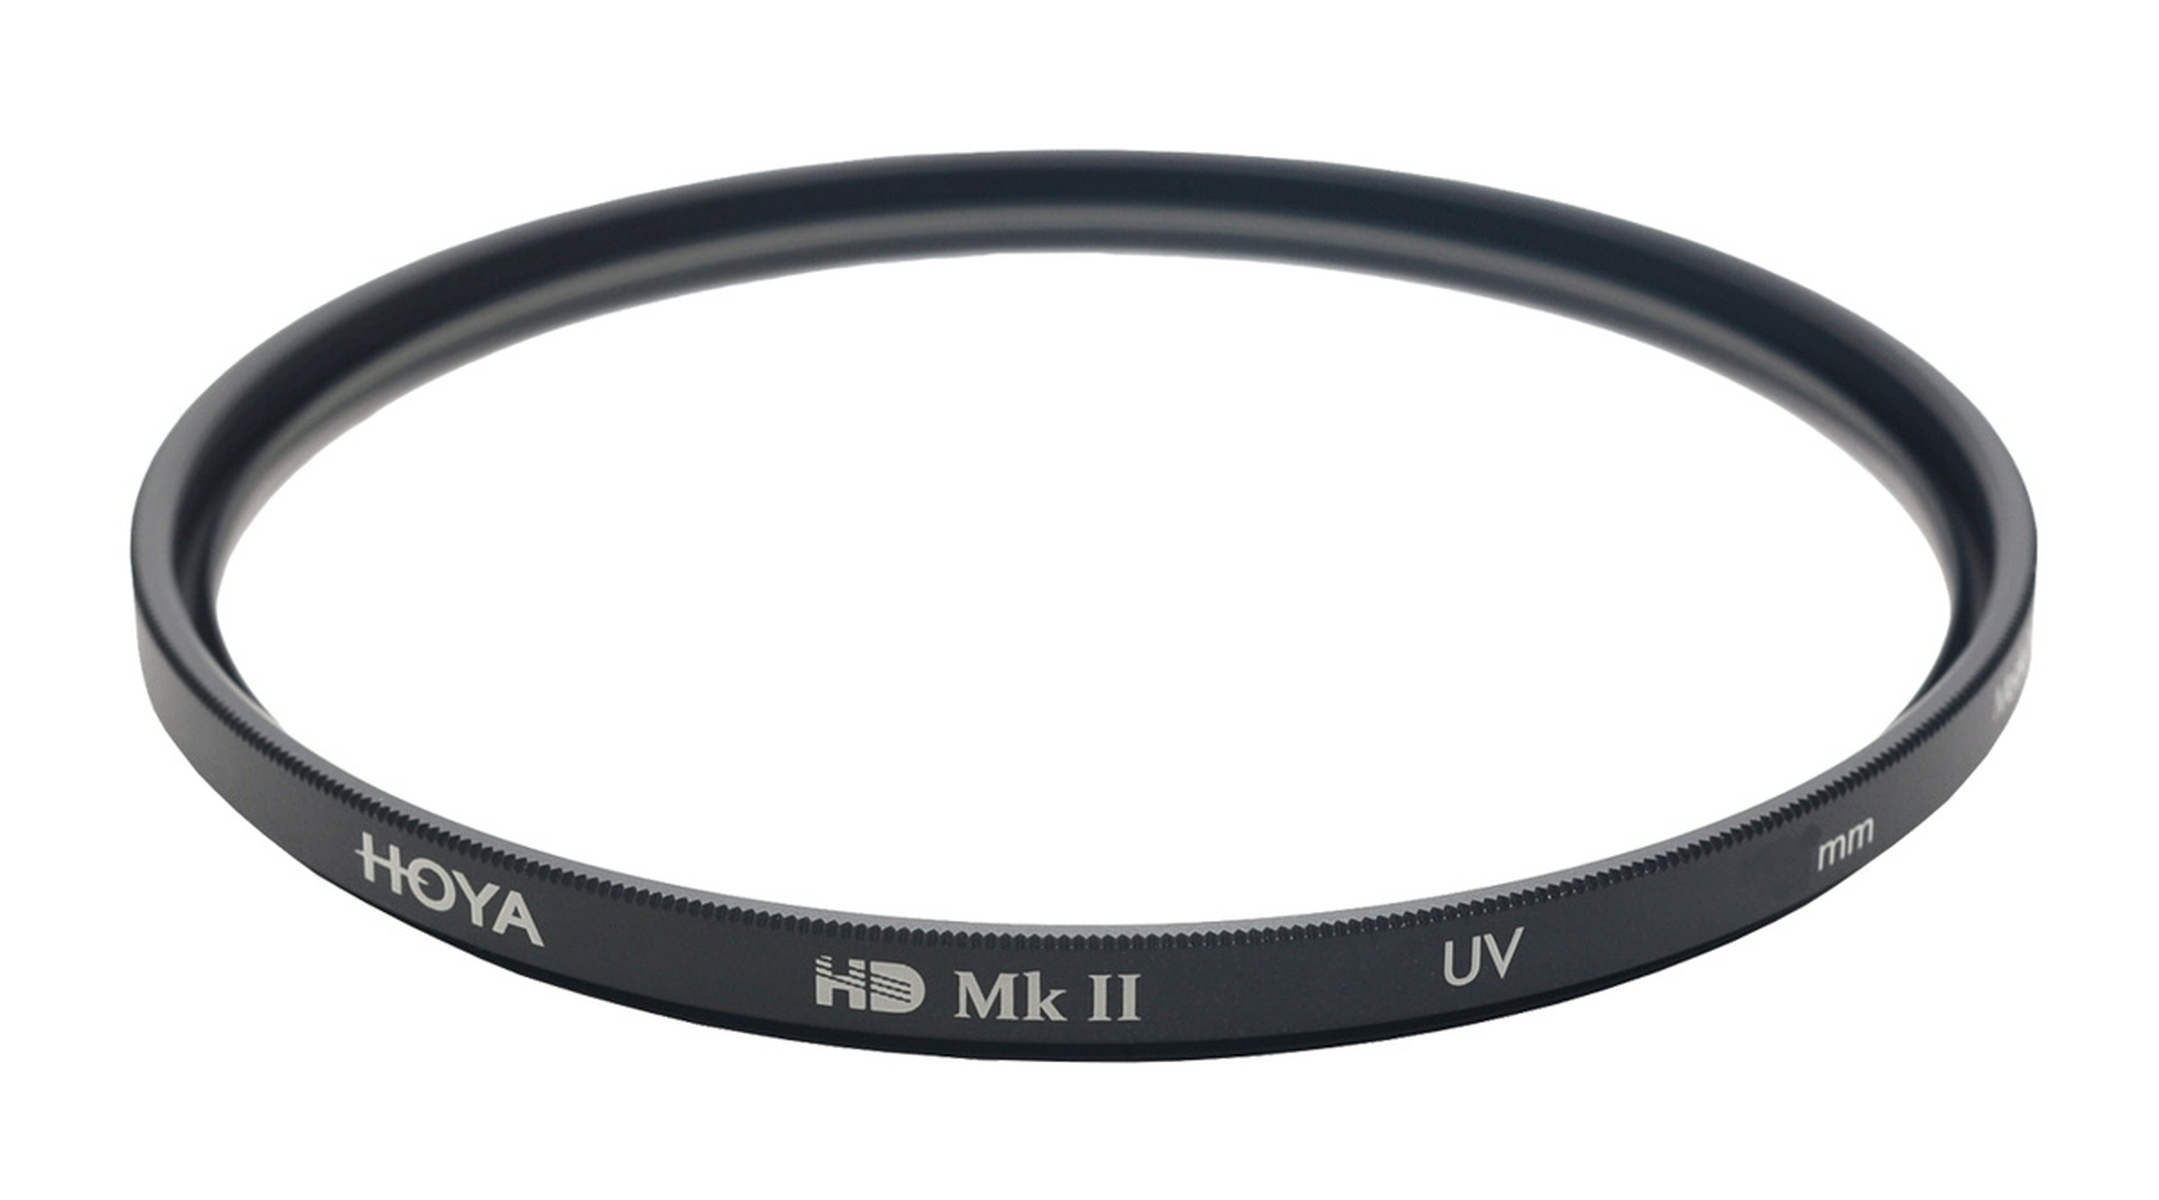 HOYA HD UV Filter Filter mm UV 55mm MkII 55